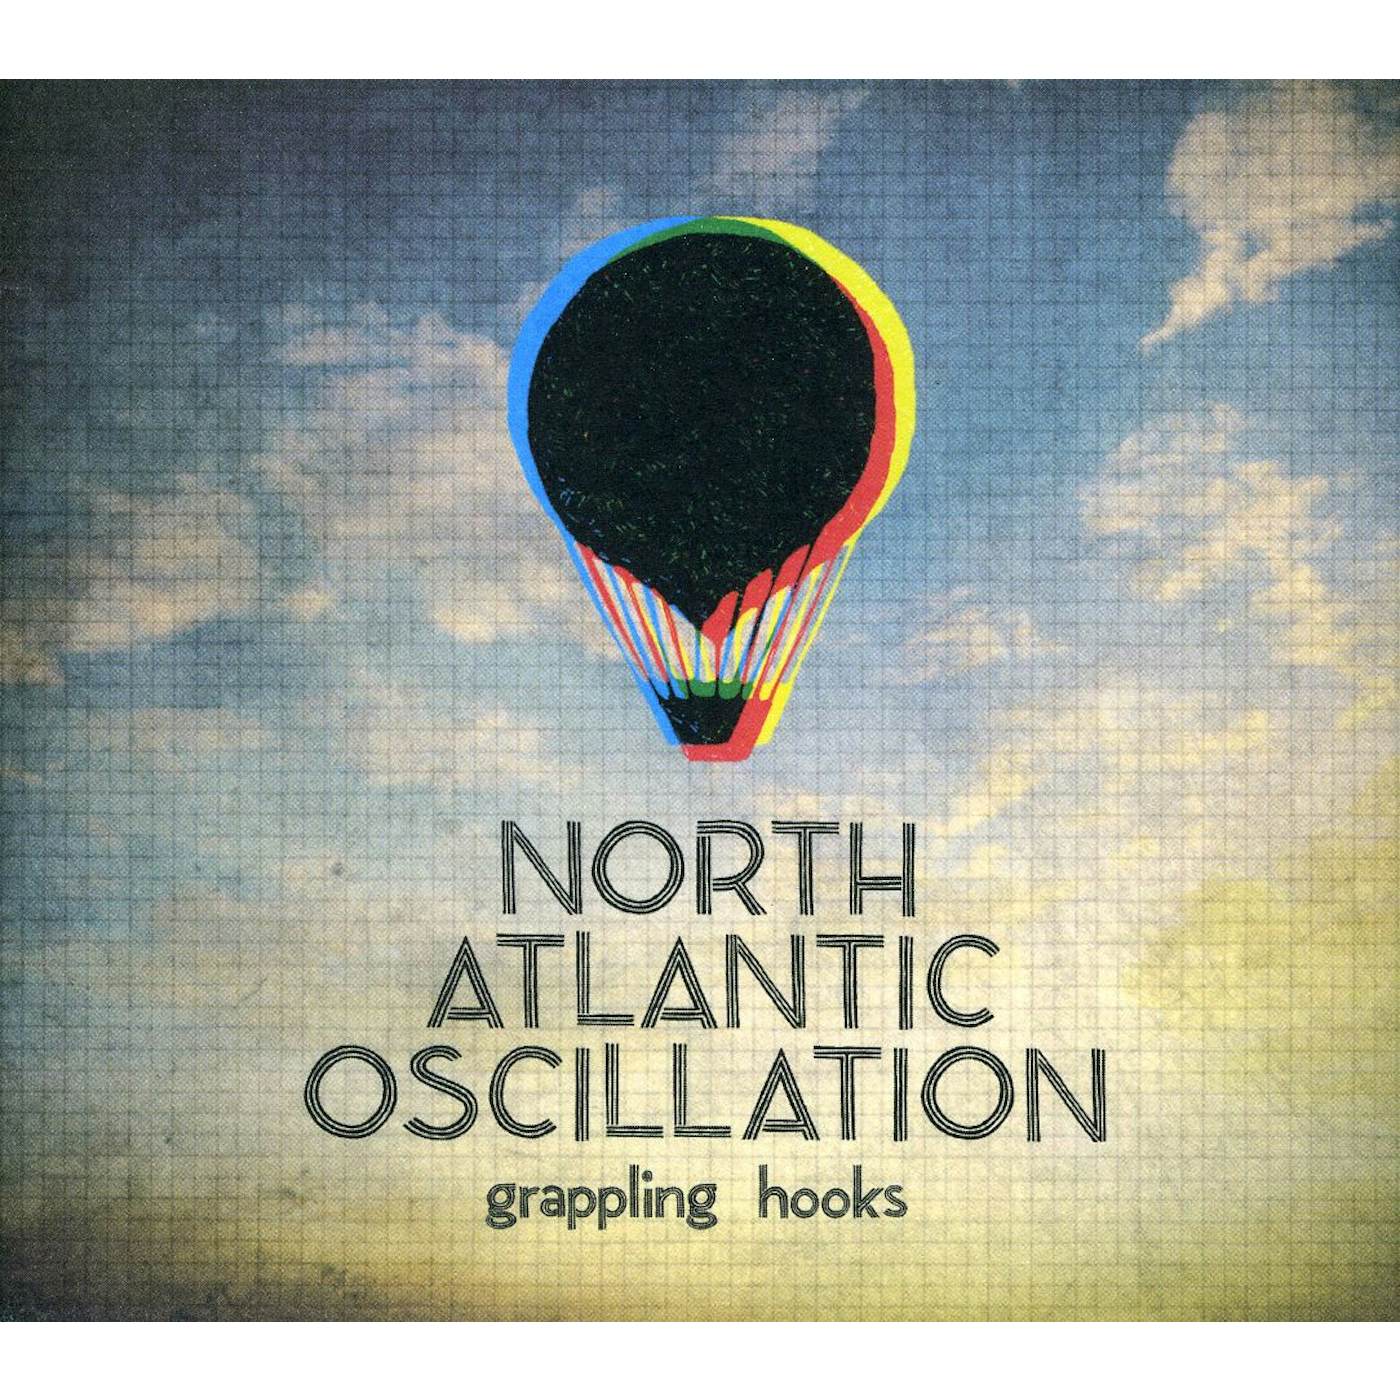 North Atlantic Oscillation GRAPPLING HOOKS CD